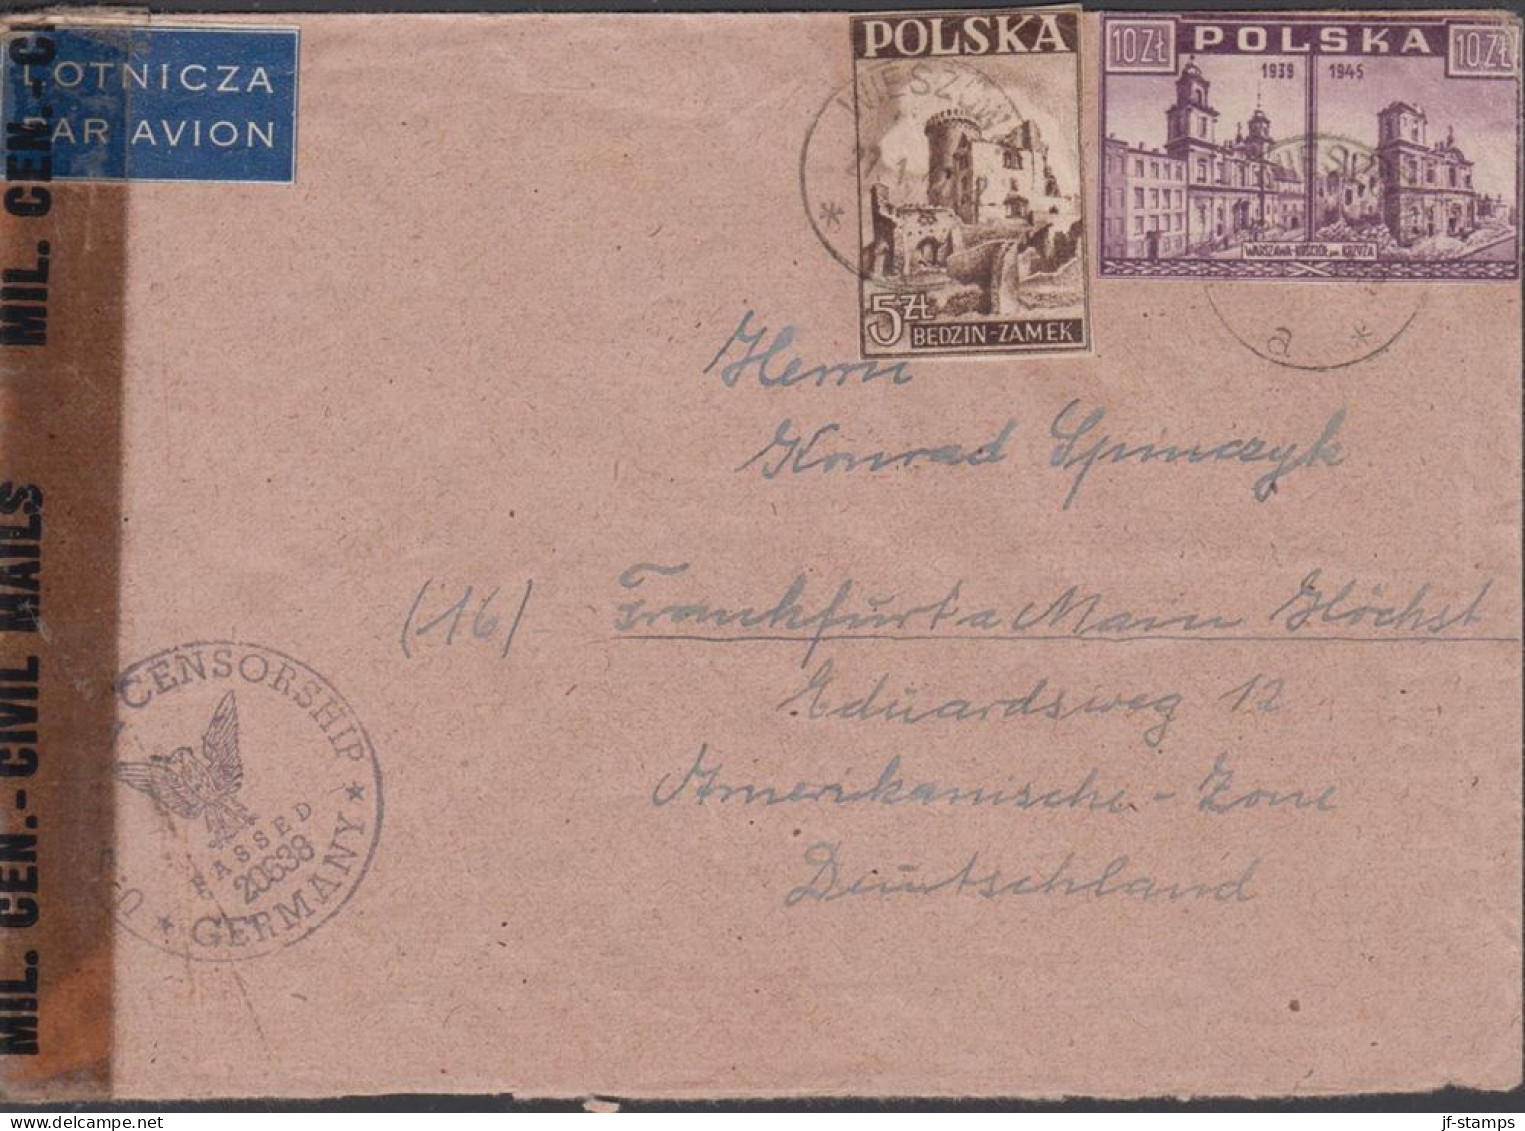 1947. POLSKA. 10 Zl. WARSZAWA + ZL 5 On Censored Cover To Germany Cancelled WIESZOW 27. 1. 4... (Michel 419+) - JF438546 - Governo Di Londra (esilio)